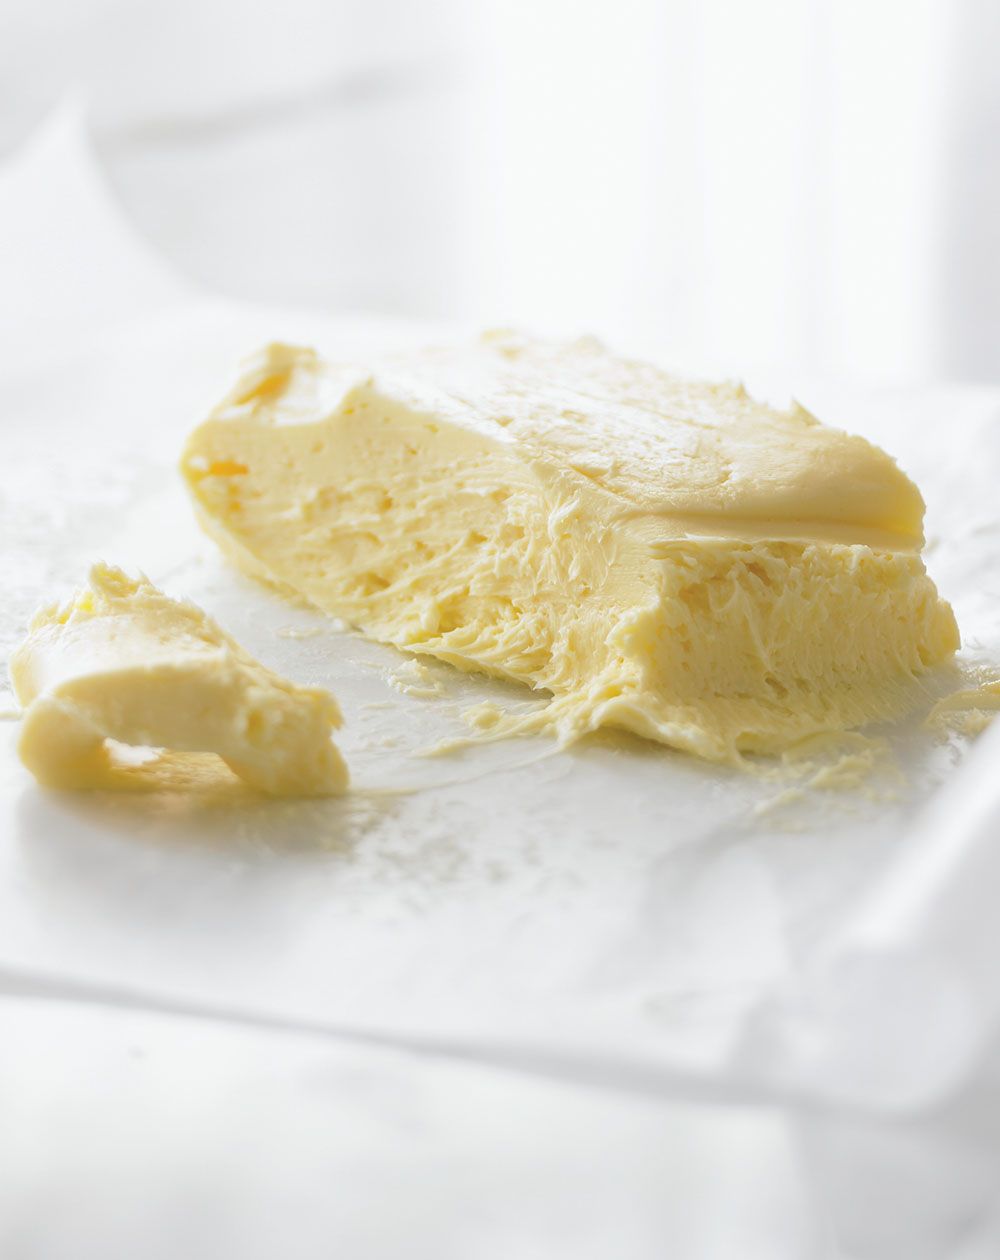 Homemade butter from Jennifer McLagan's Fat